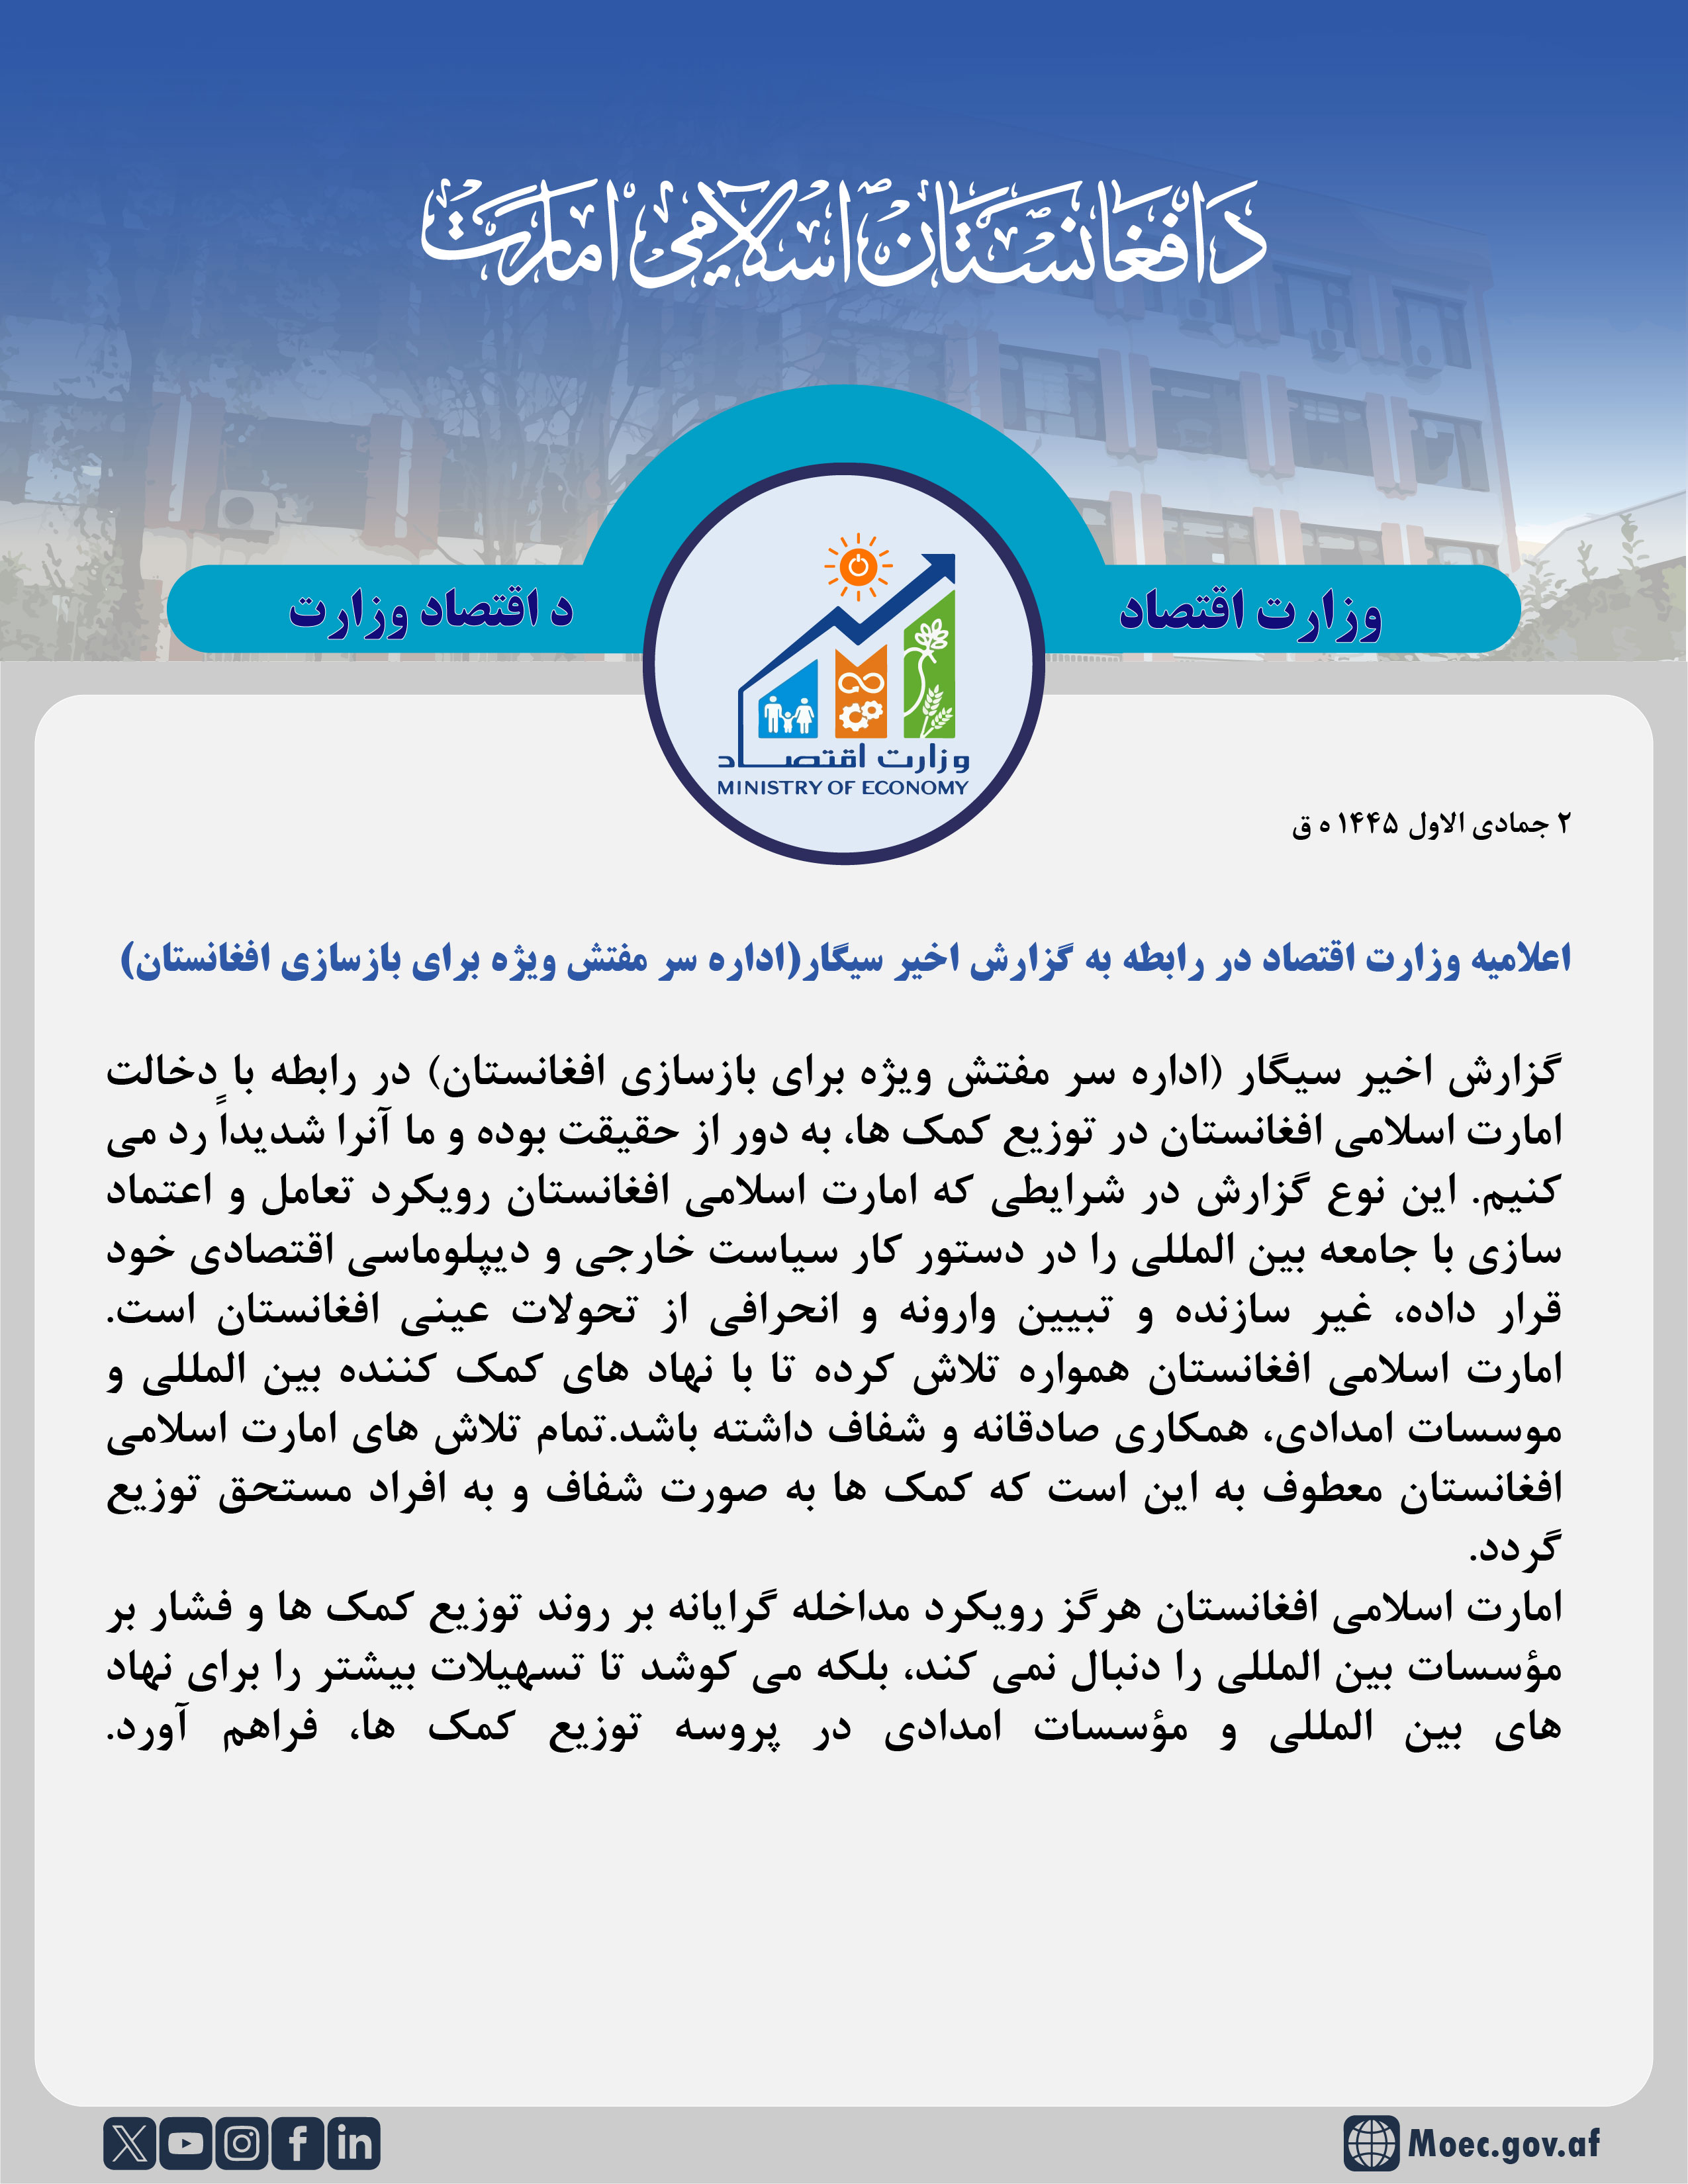 اعلامیه وزارت اقتصاد در رابطه به گزارش اخیر سیگار ( اداره سر مفتش ویژه برای بازسازی افغانستان ) :